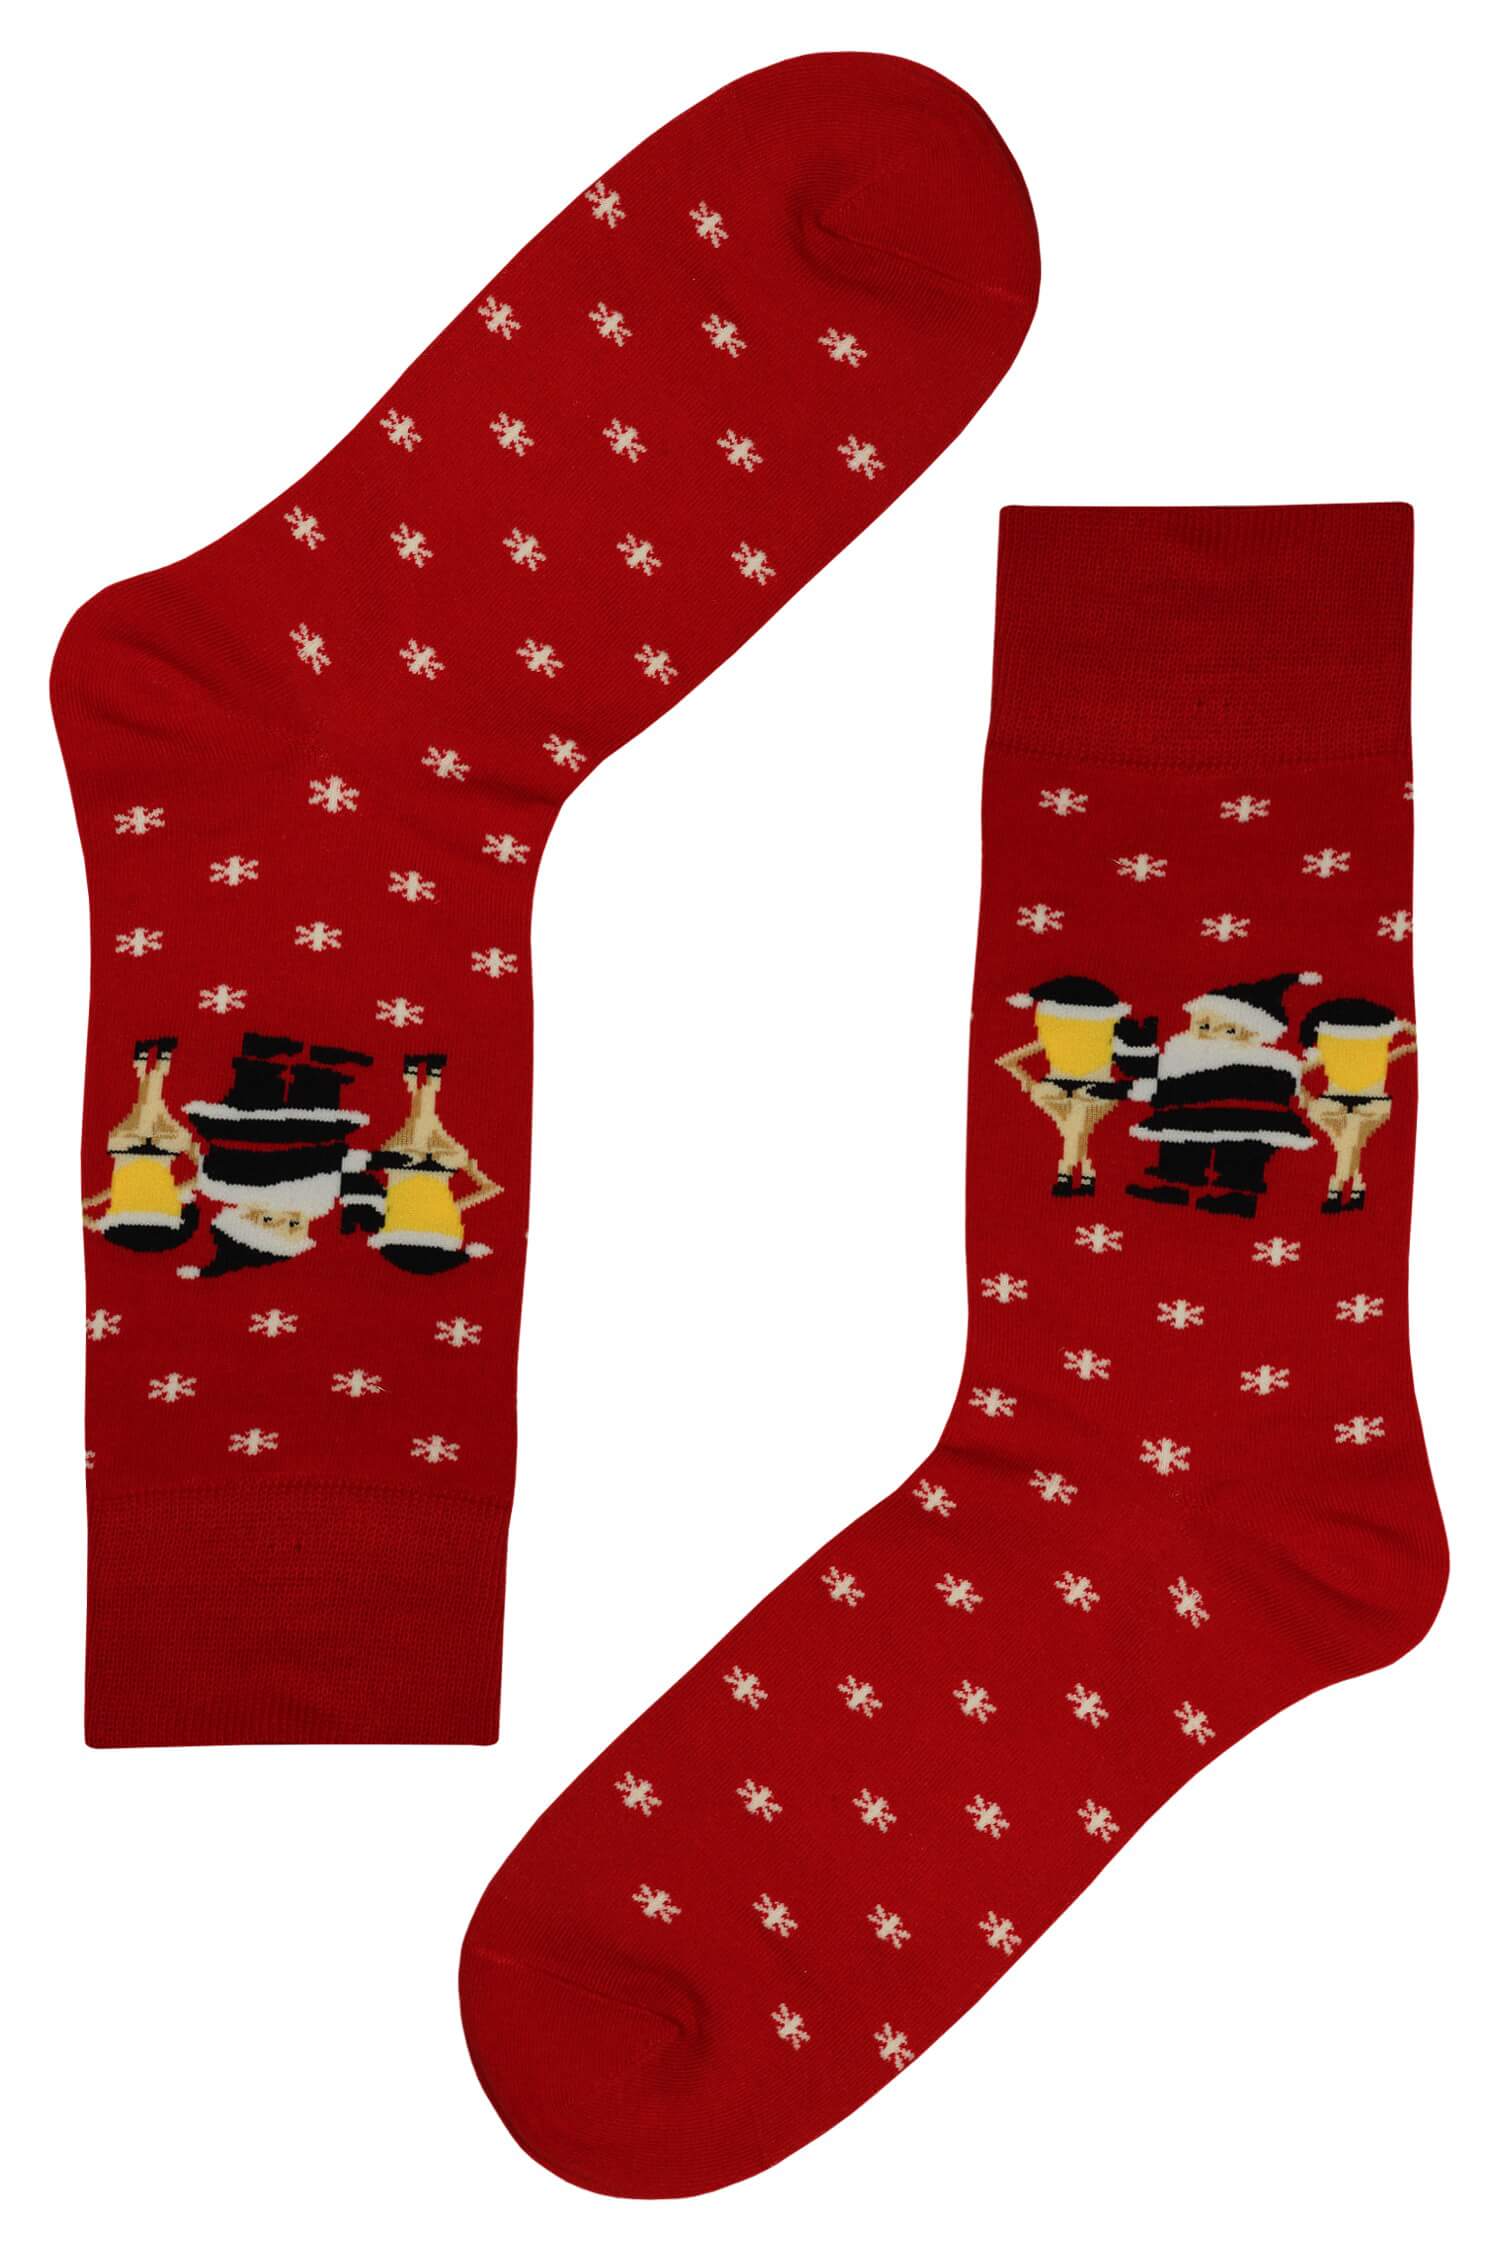 Pánské vánoční ponožky s veselými obrázky 39-42 červená